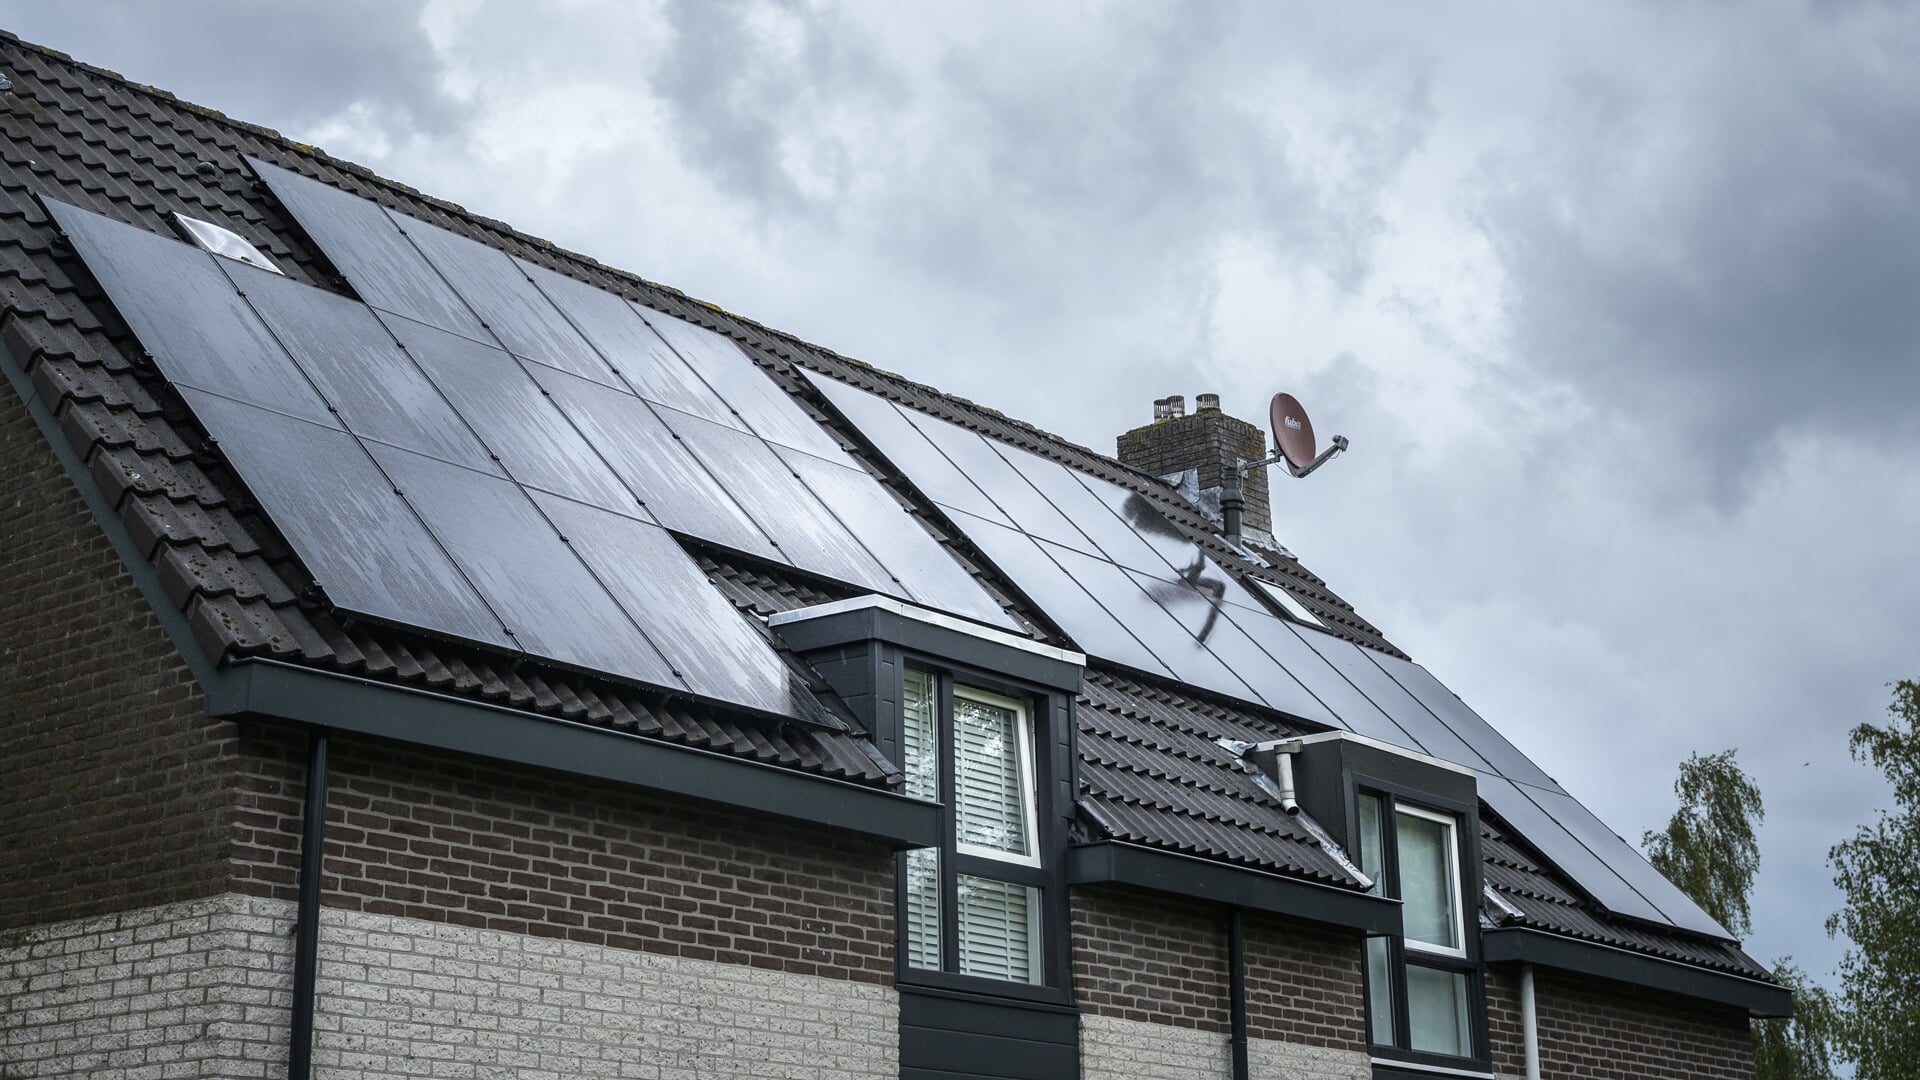 Steeds meer huizen in de gemeente hebben zonnepanelen.